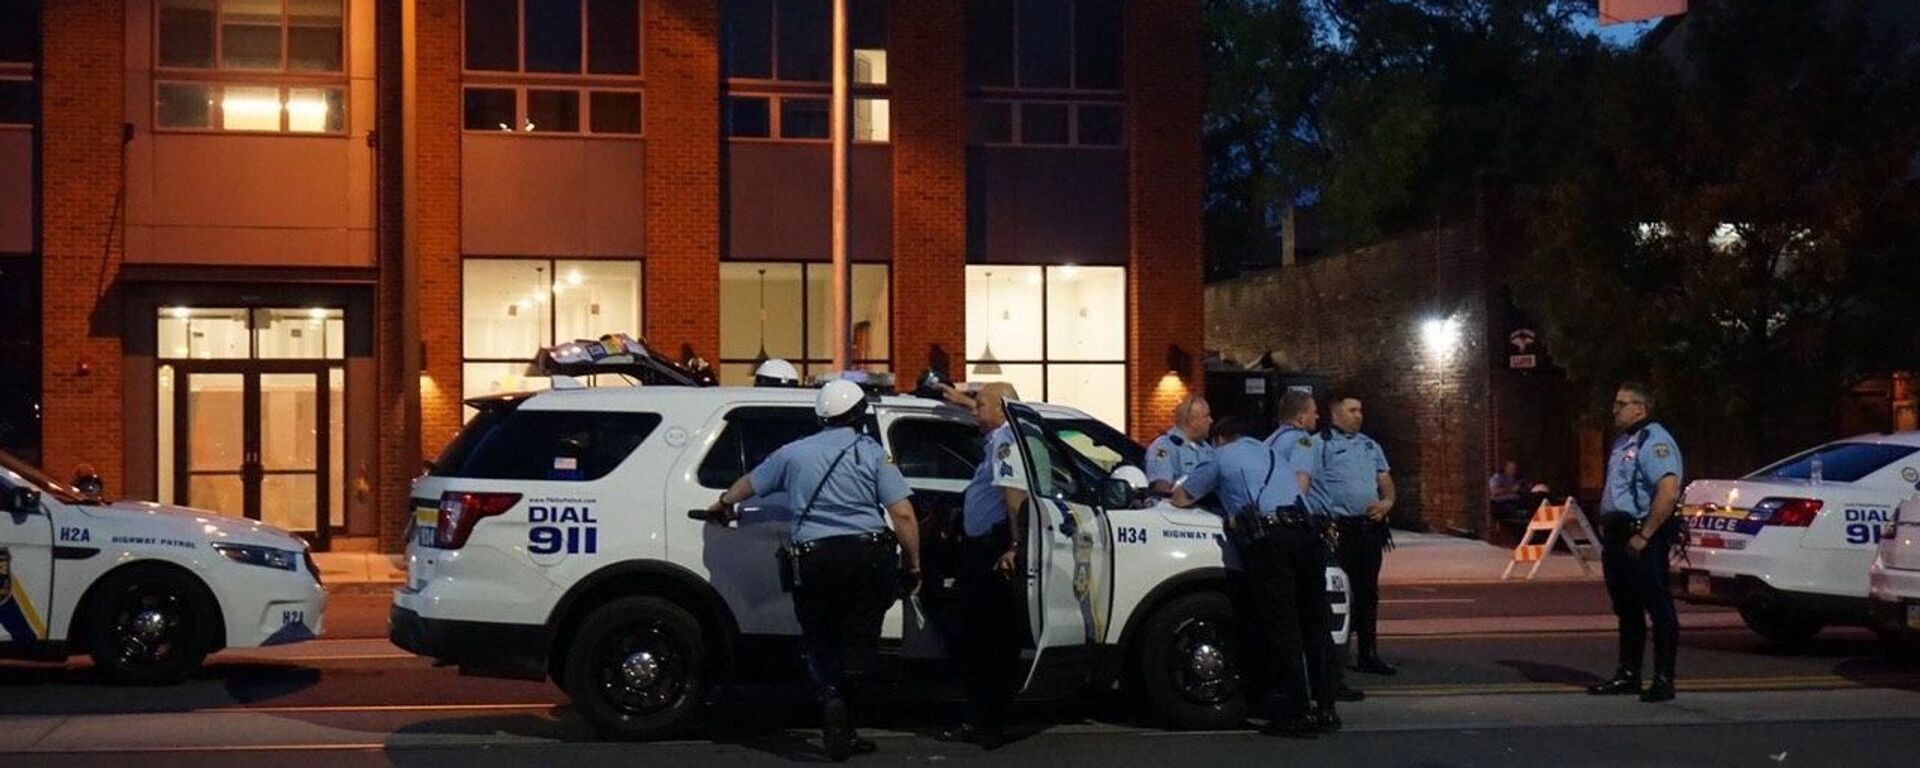 الشرطة الأمريكية تخلي مبنى الكابيتول بعد بلاغ بتهديد محتمل